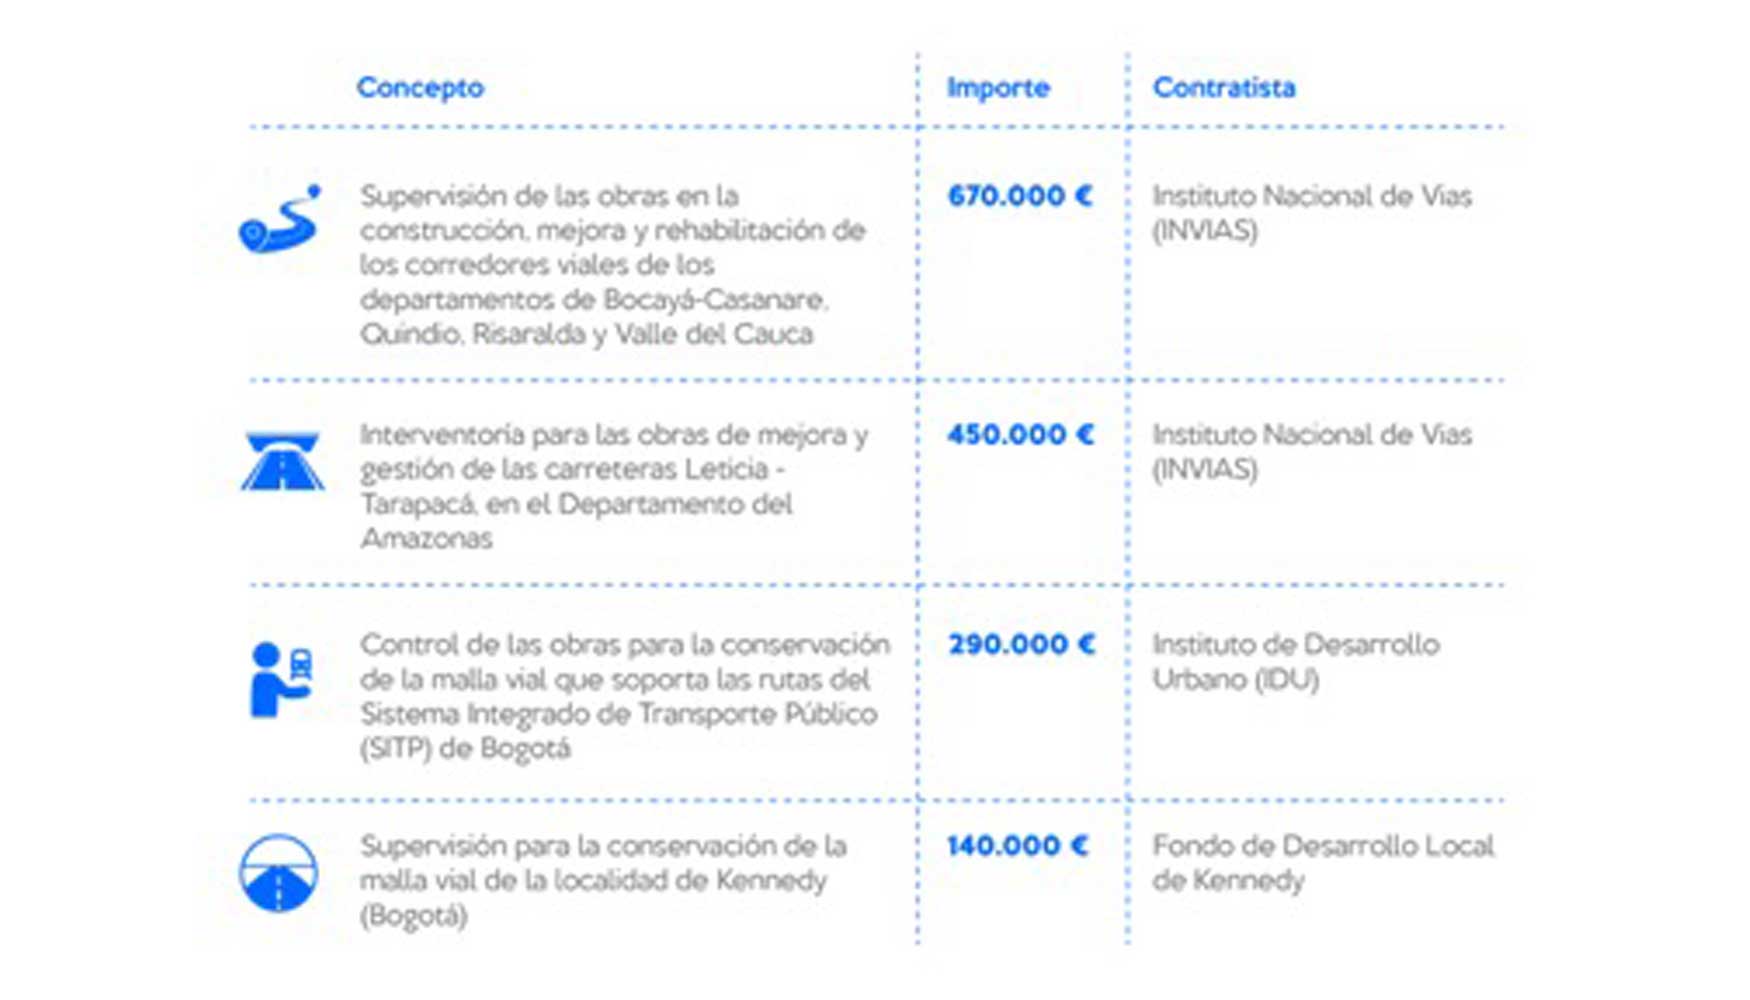 Los nuevos proyectos de Intecsa-Inarsa en Colombia en cifras